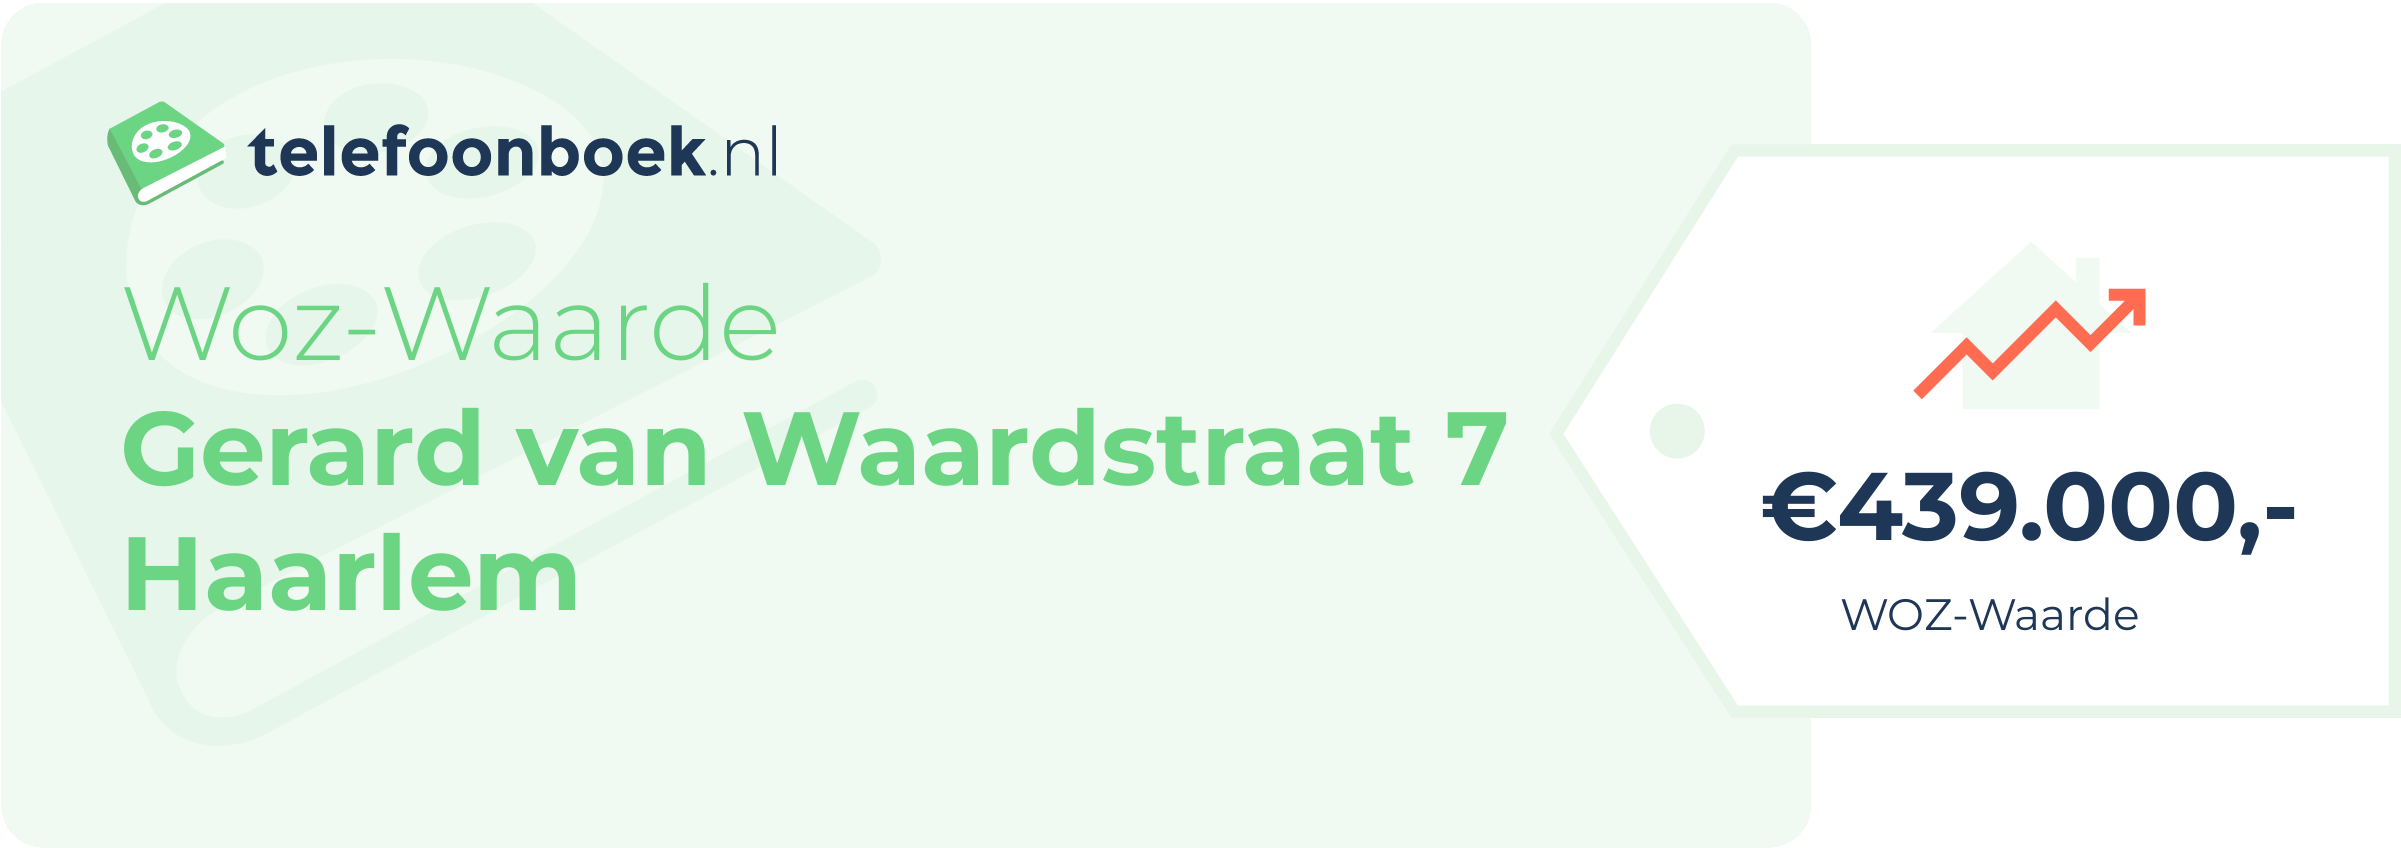 WOZ-waarde Gerard Van Waardstraat 7 Haarlem